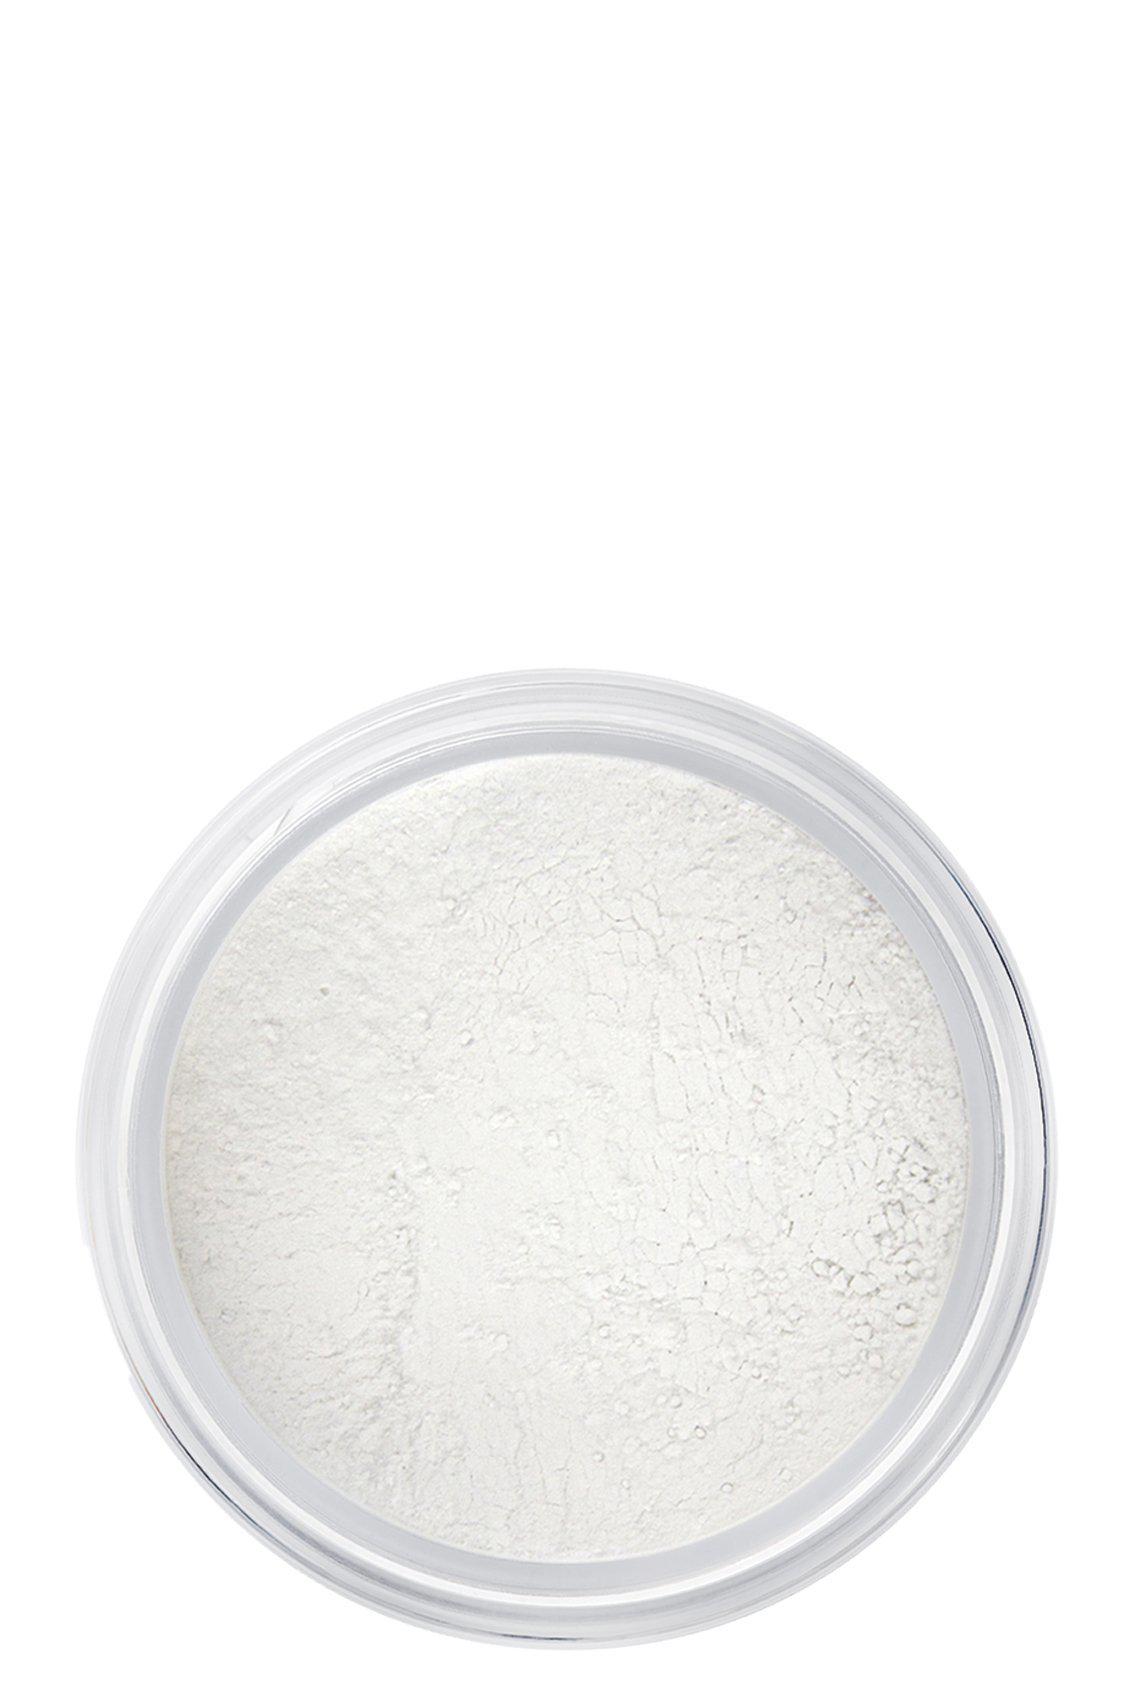 Indisponible : Silk finish powder Nicht verfügbar: Puder für Seidenglanz - Manasi 7